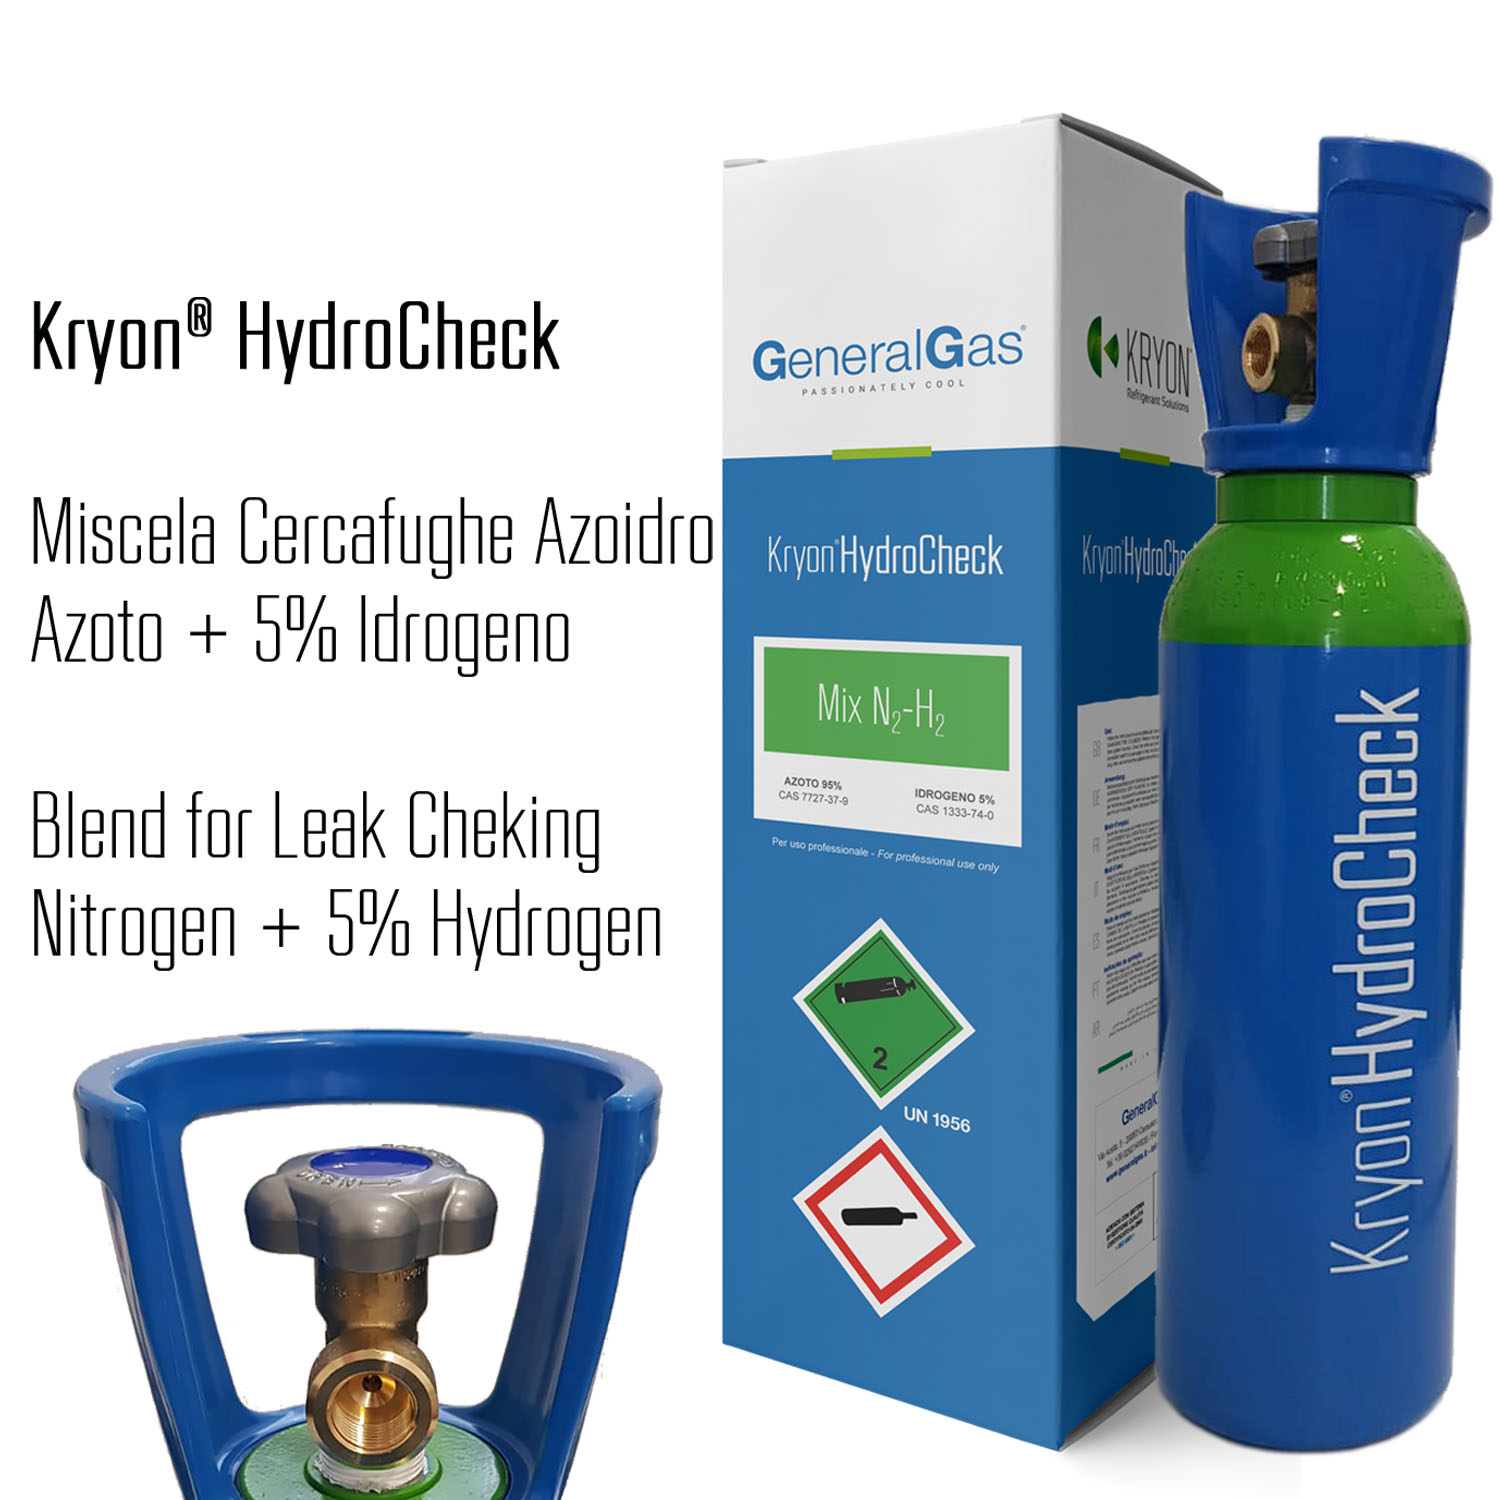  Kryon® HydroCheck 1000 lt. - high pressure cylinder filled with nitrogen + 5% hydrogen blend for leak checking -  5 lt 200 bar - capacity 1 cum (1.000 liters of blend), complete with valve